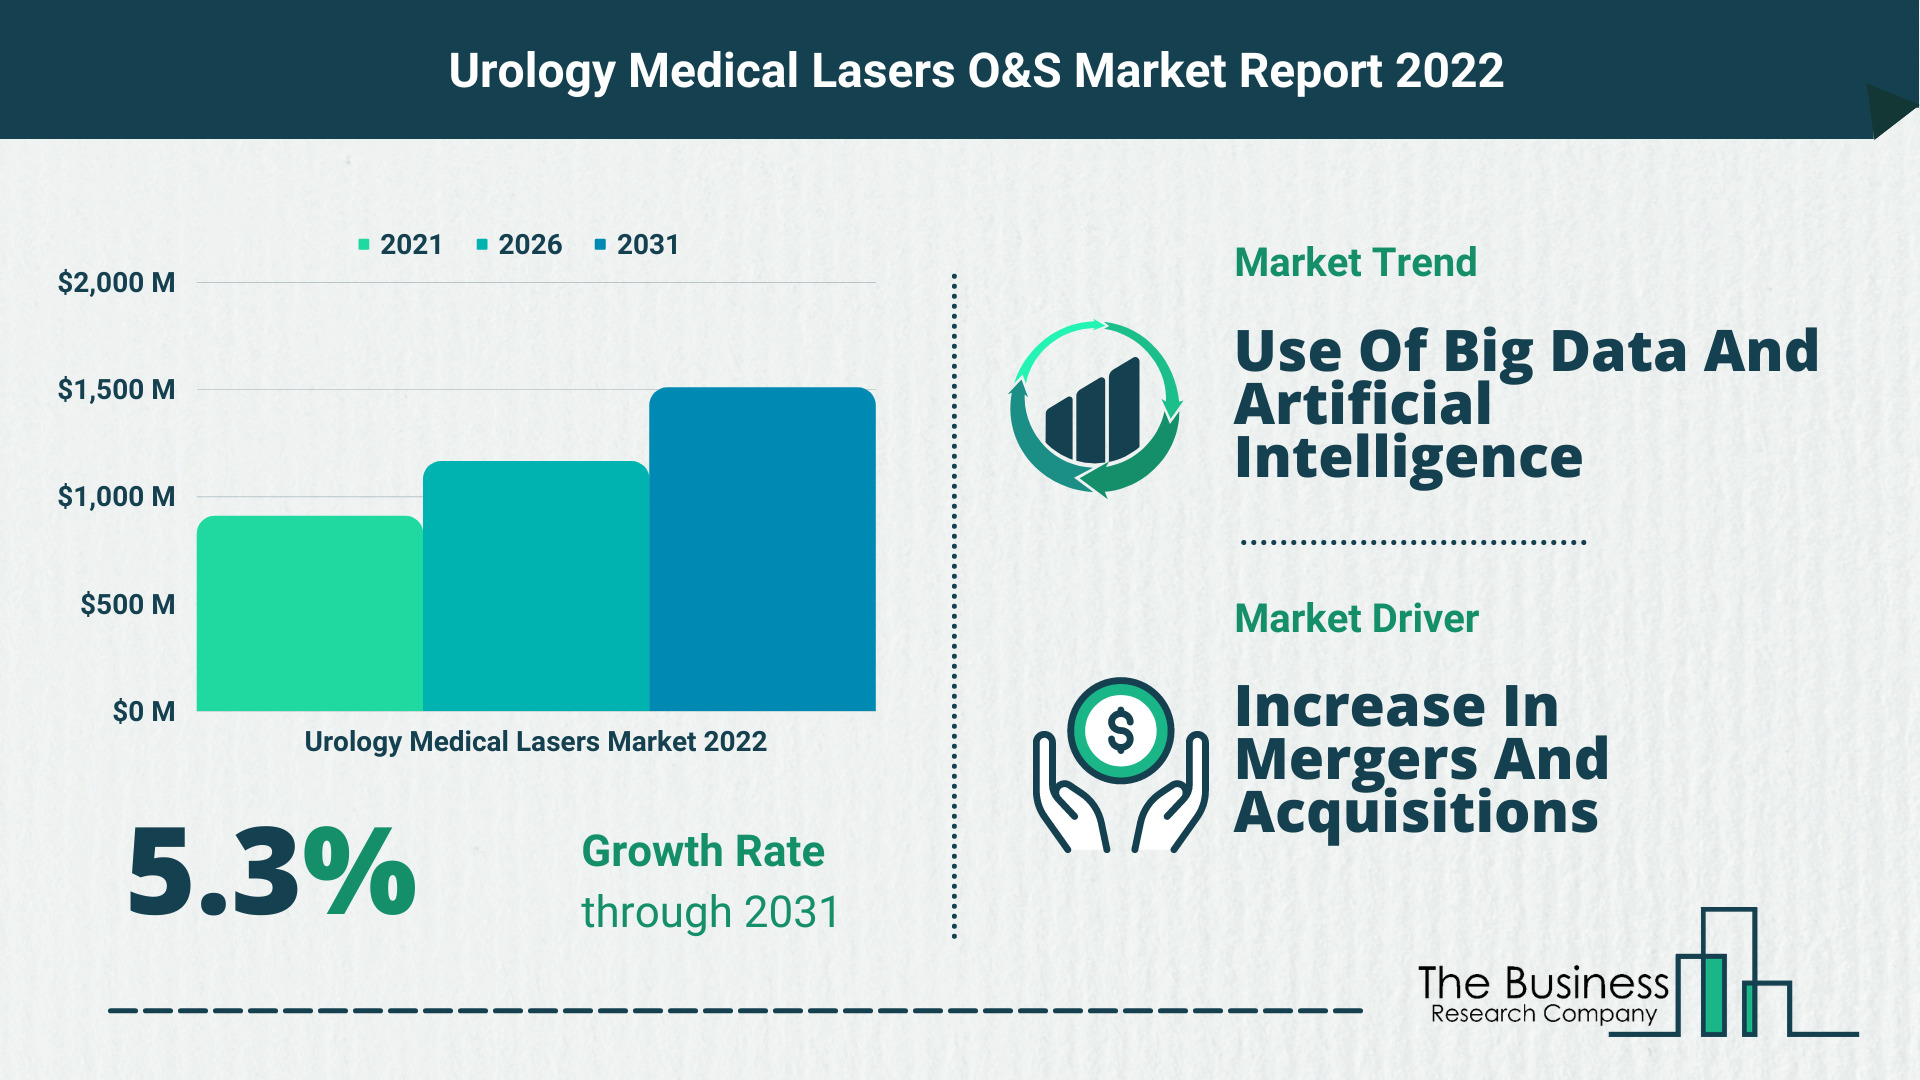 Global Urology Medical Lasers Market Size